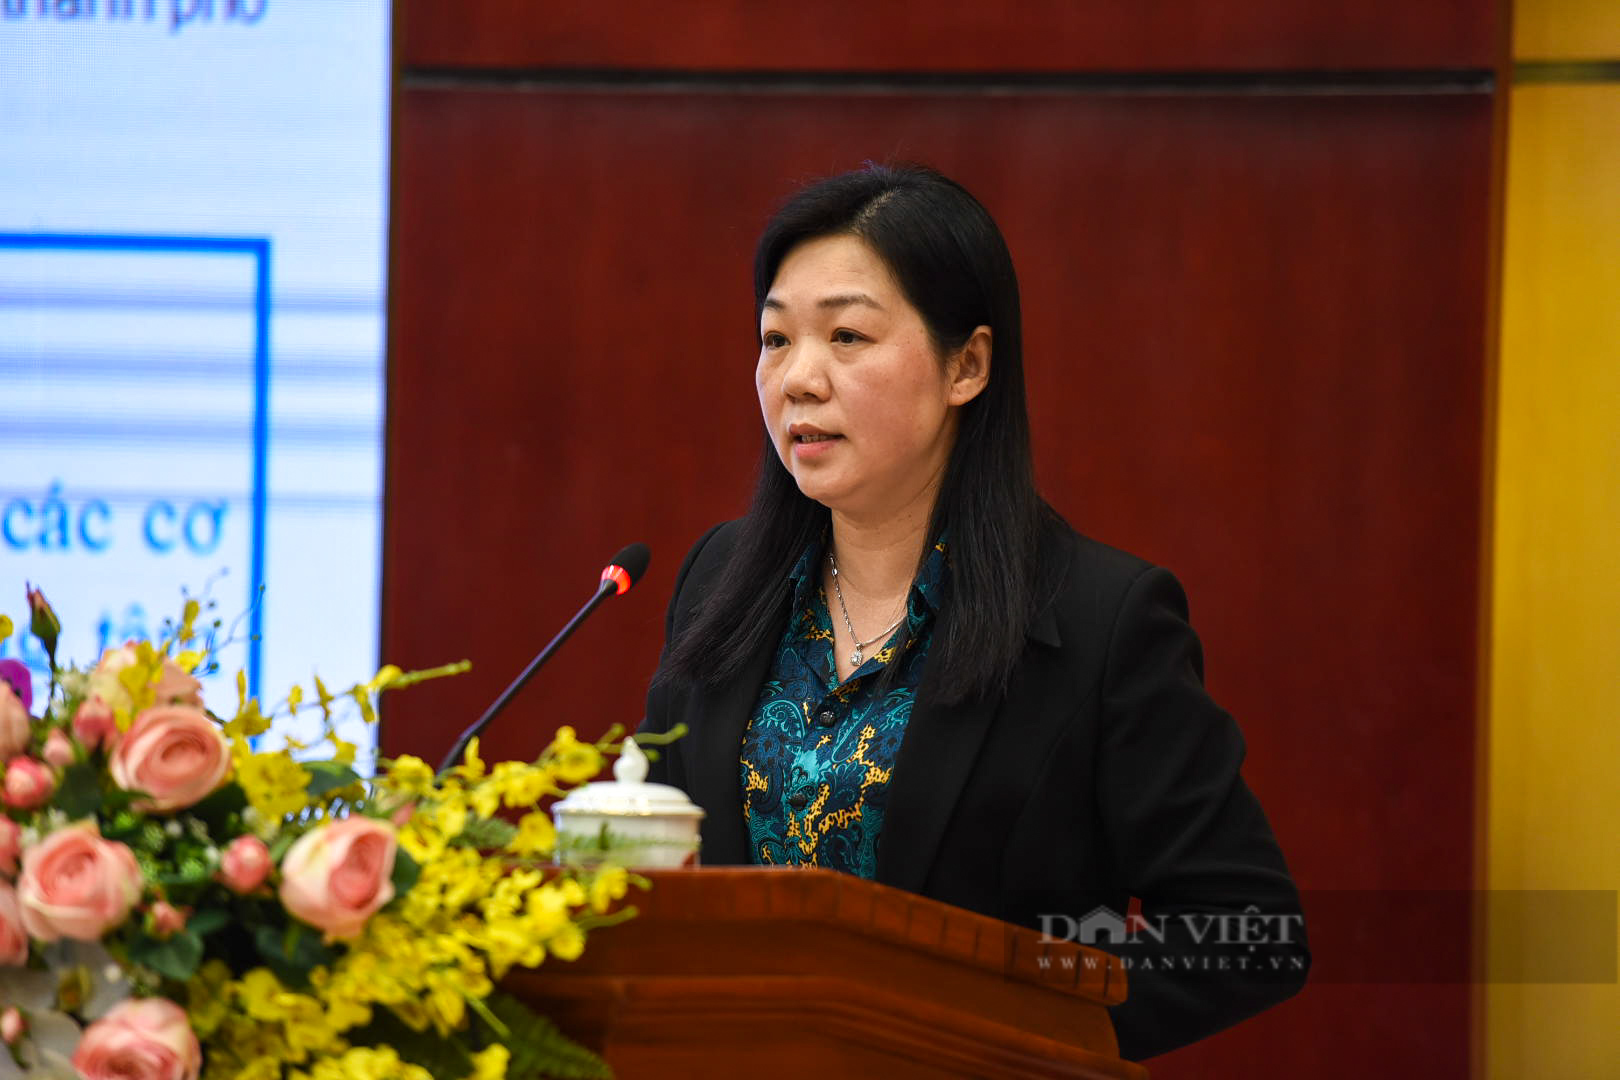 Chủ tịch UBND tỉnh Bắc Ninh chỉ đạo xử lý hiện tượng gây phiền hà, nhũng nhiễu người dân, doanh nghiệp - Ảnh 3.